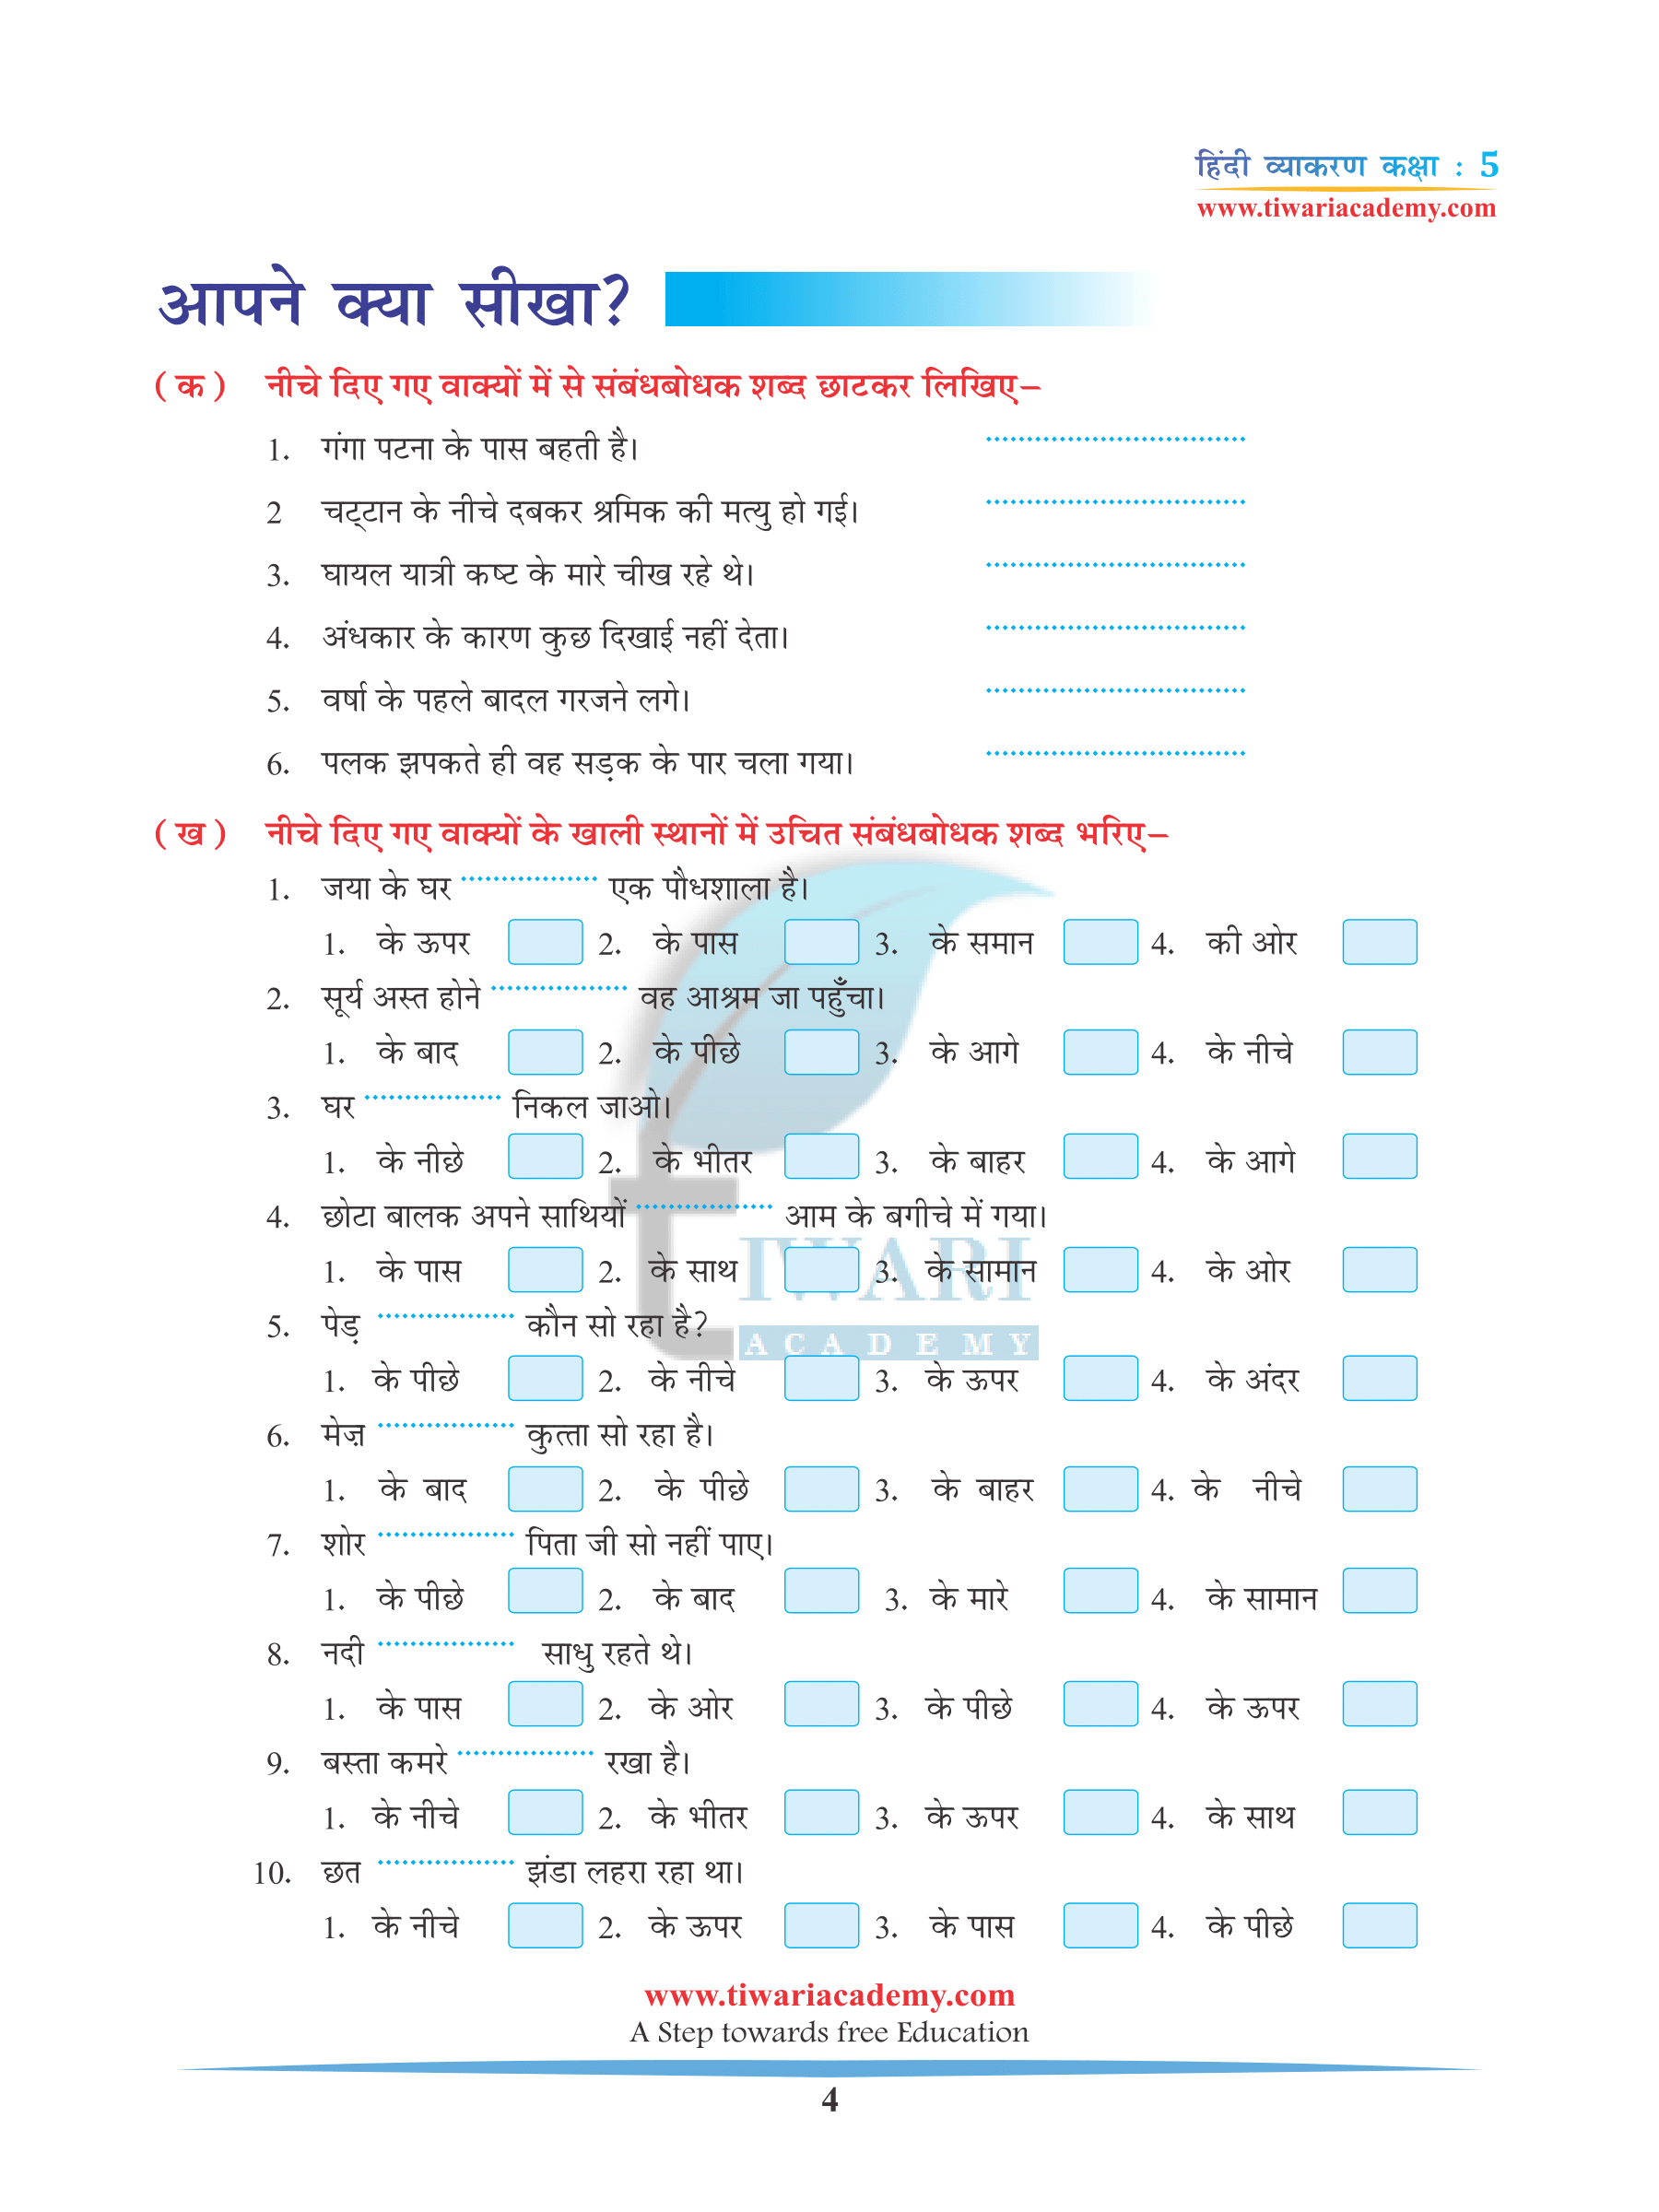 CBSE Class 5 Hindi Grammar Chapter 9